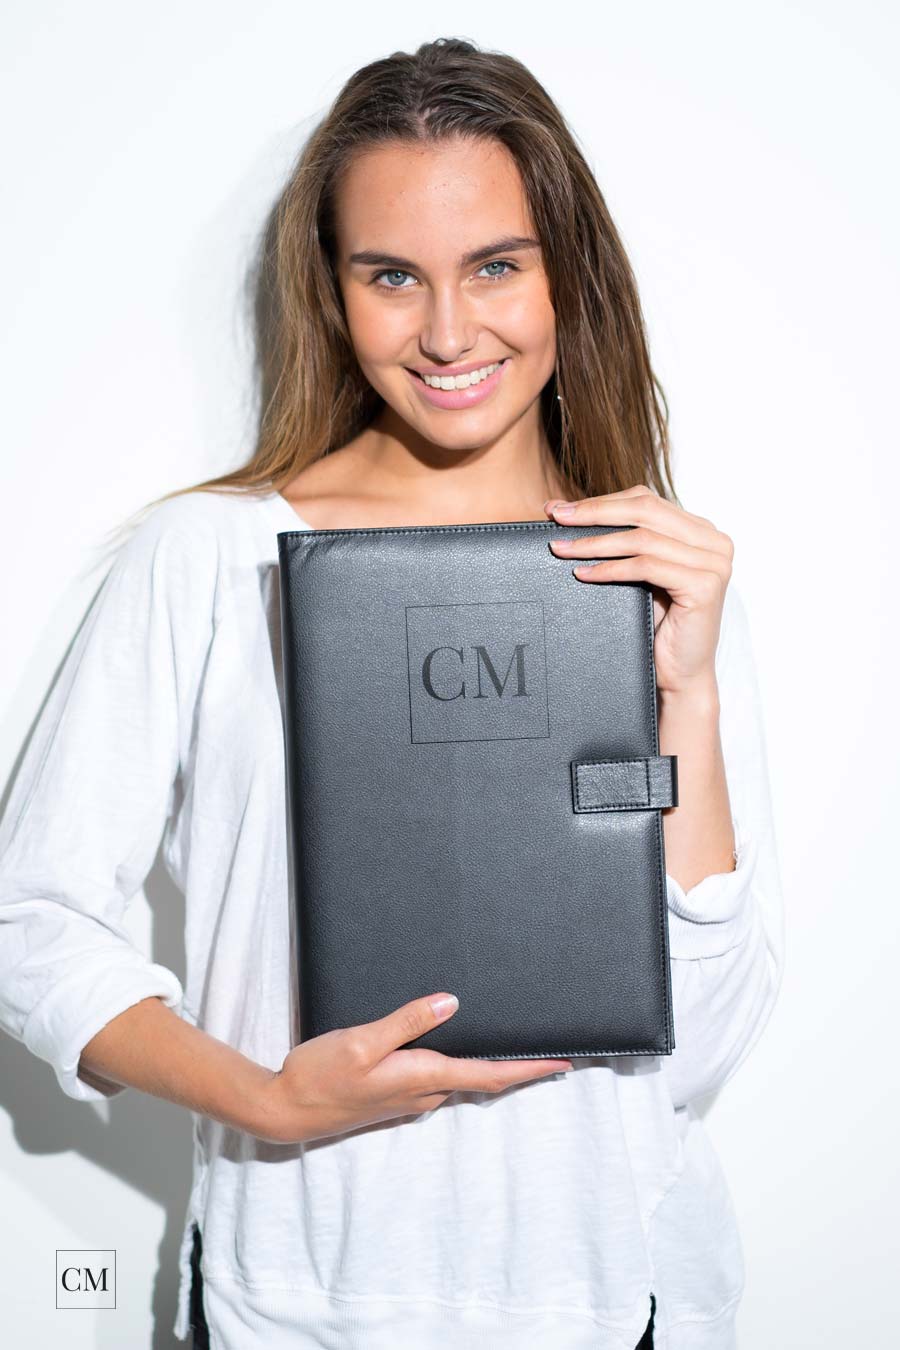 modelmappe-modelbook-empfehlung-verarbeitung-leder-premium-international